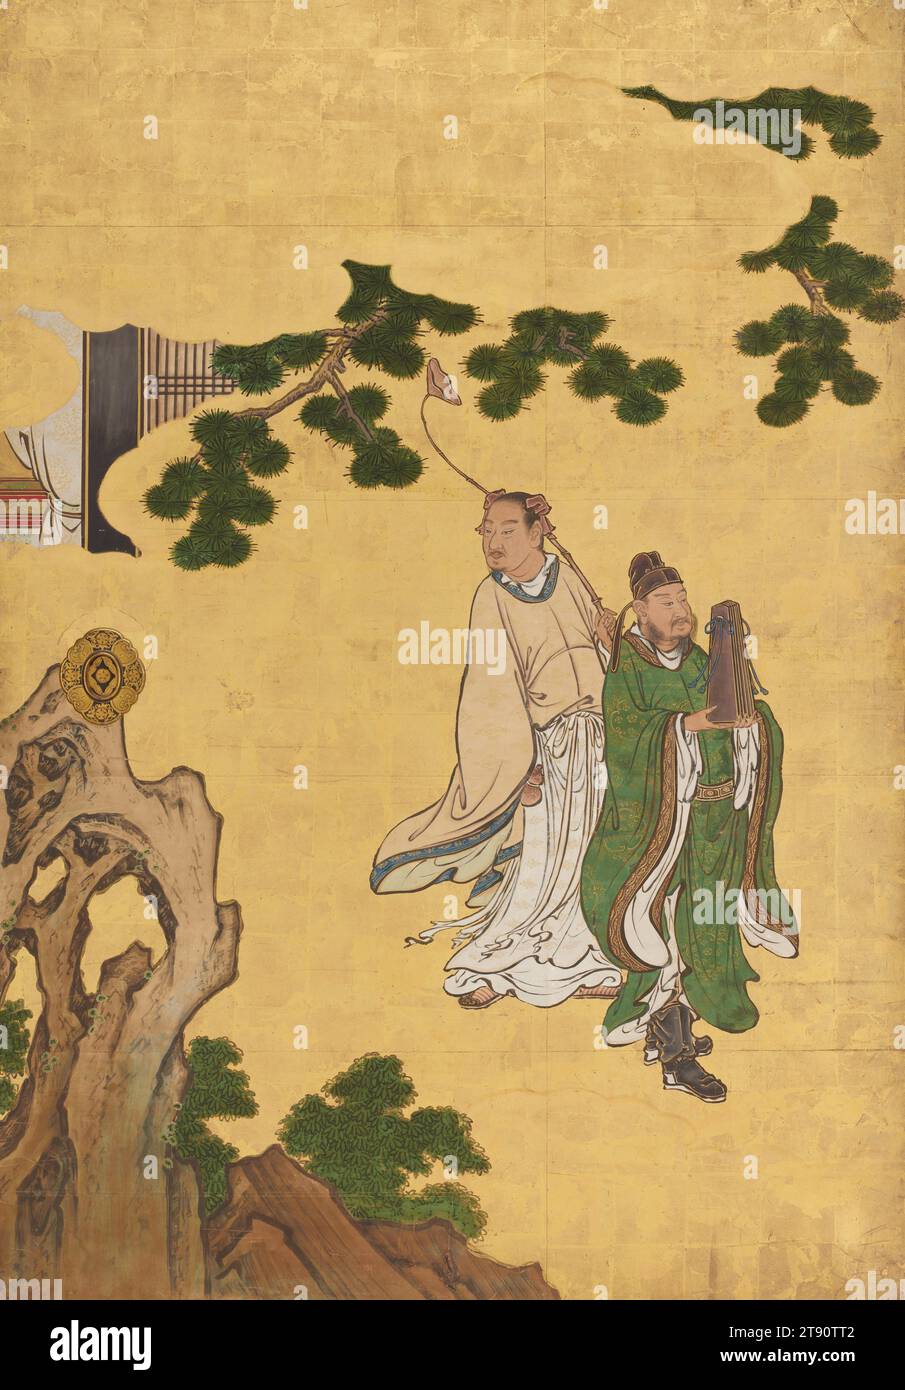 Cao Guojiu (links) und LAN Caihe (rechts) links vom Set Daoist Unsterbliche, 1646, Kano Sansetsu, Japanisch, 1589 - 1651, 65 1/2 x 45 1/2 Zoll (166,37 x 115,57 cm) (Bild)69 x 49 x 3/4 Zoll (175,26 x 124,46 x 4,45 cm) (Außenrahmen), Tinte, Farbe und Blattgold auf Papier, Japan, 17. Jahrhundert, diese Schiebetürpaneele (fusuma) zeigen eine Gruppe chinesischer Daoistischer Unsterblicher. Die Chinesen glaubten, die Unsterblichen seien historische und legendäre Persönlichkeiten, die es durch moralische Tugend, Glauben und Disziplin schafften, die Grenzen der natürlichen Welt zu überschreiten und ewig zu leben. Sie wurden als Heilige verehrt. Stockfoto